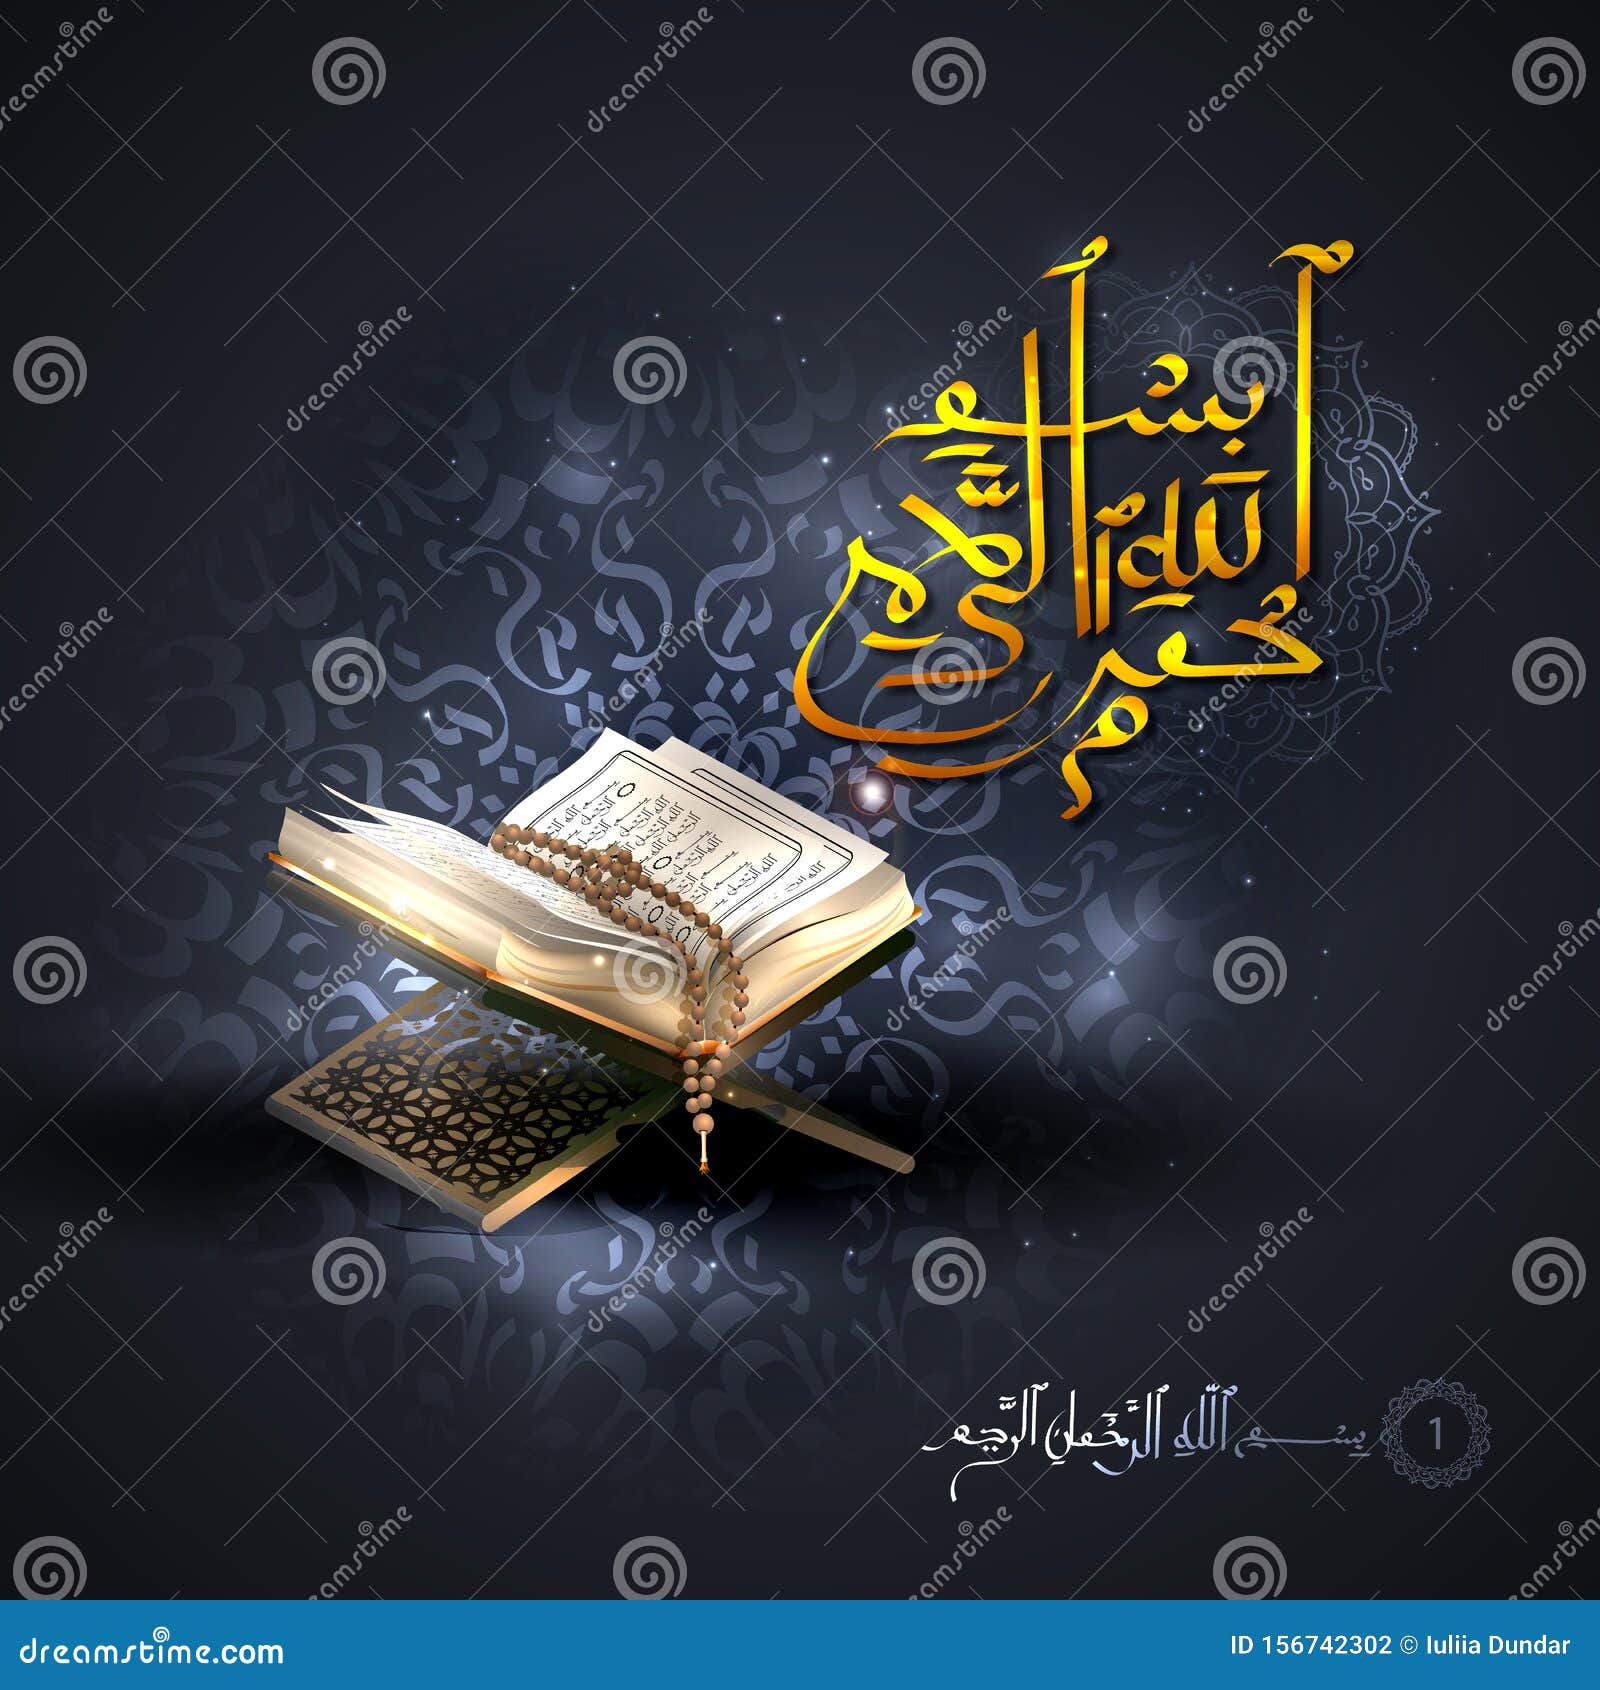 Ramadan Background Images - Free Download on Freepik